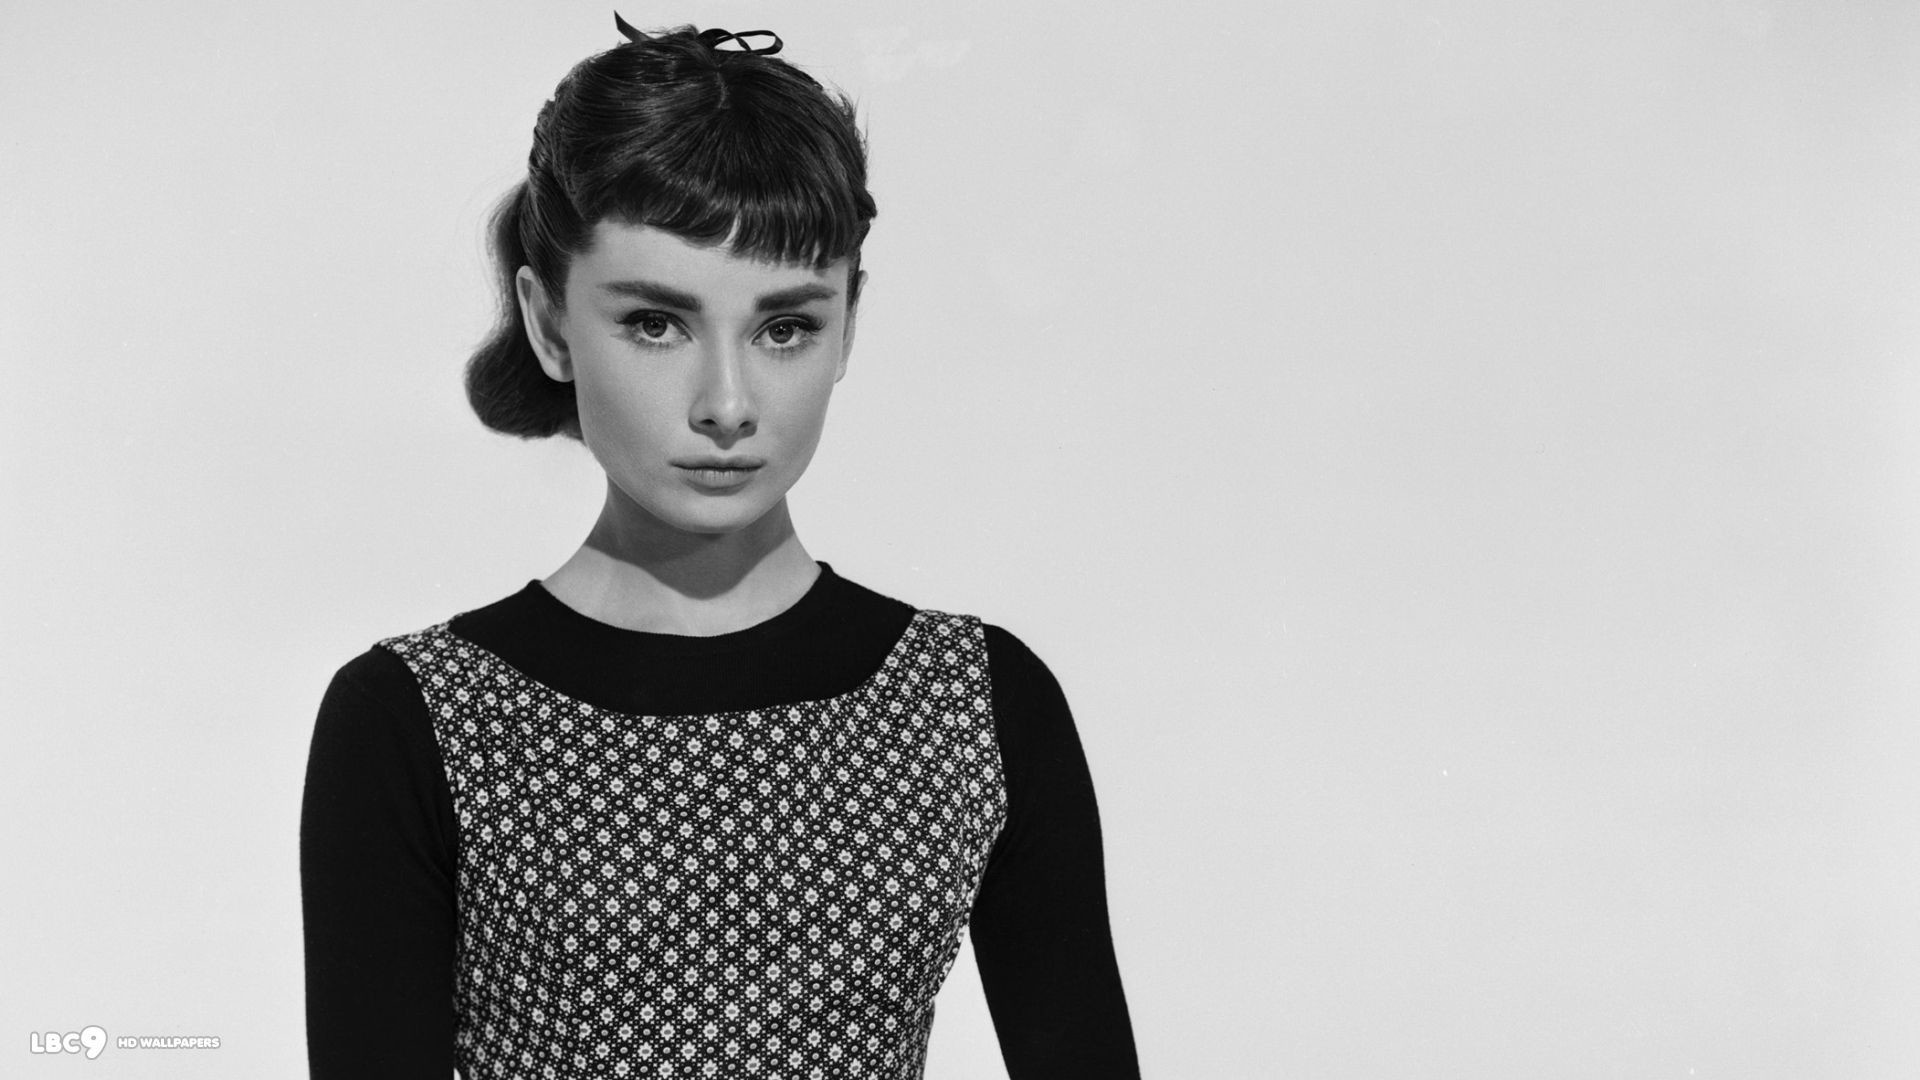 Audrey Hepburn, Desktop wallpapers, Background images, Movie stills, 1920x1080 Full HD Desktop